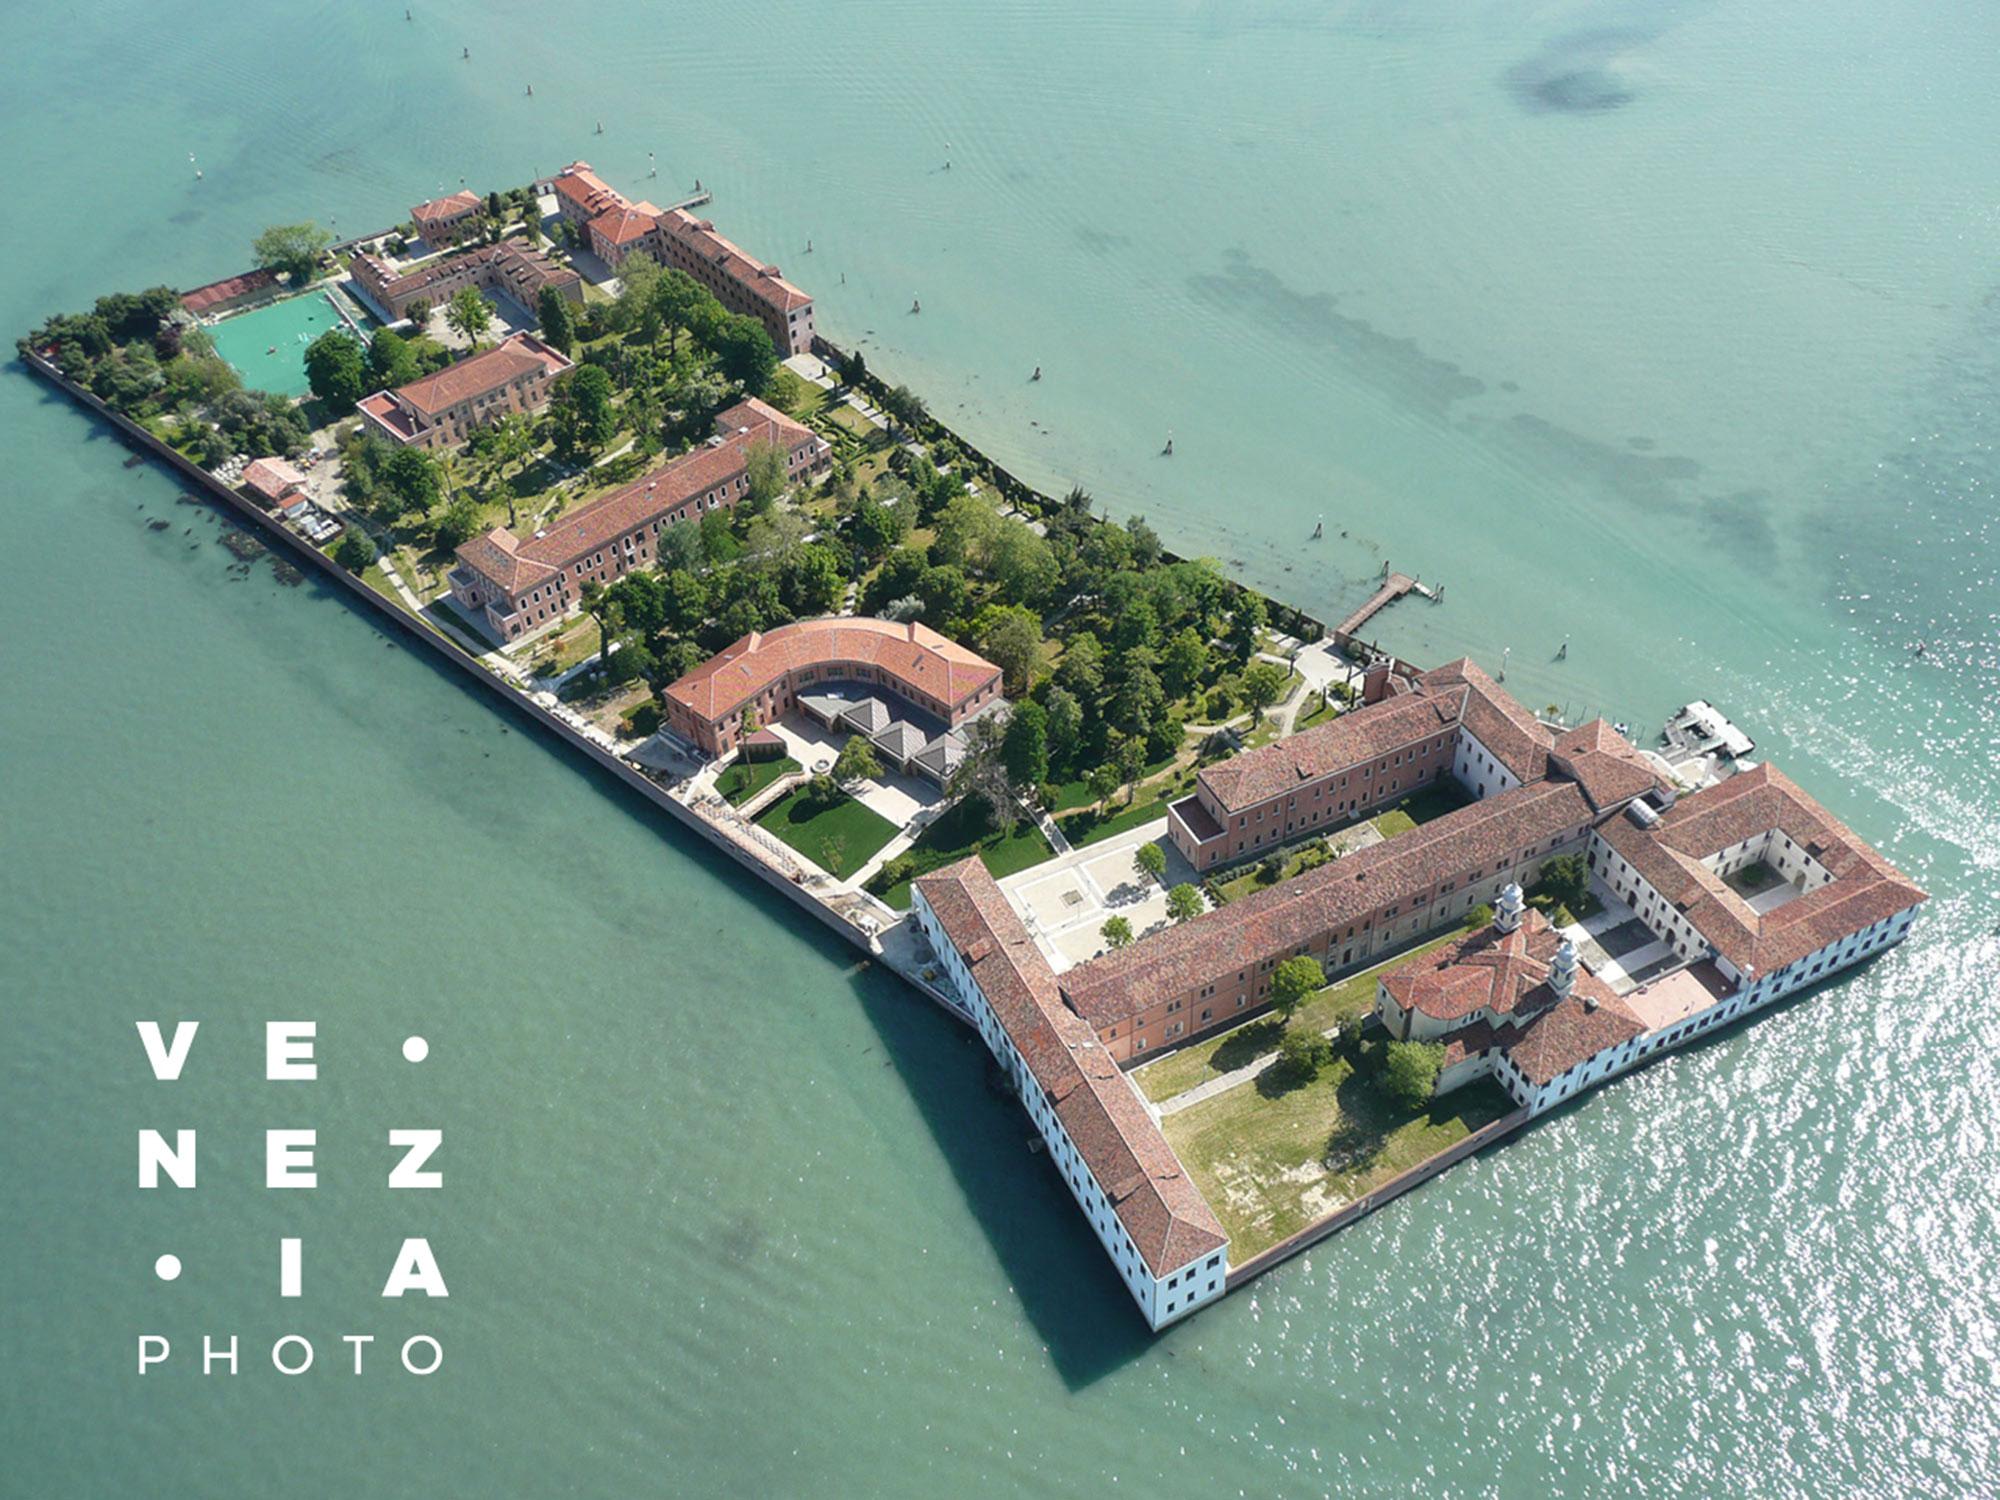 Venezia Photo, dernières places disponibles